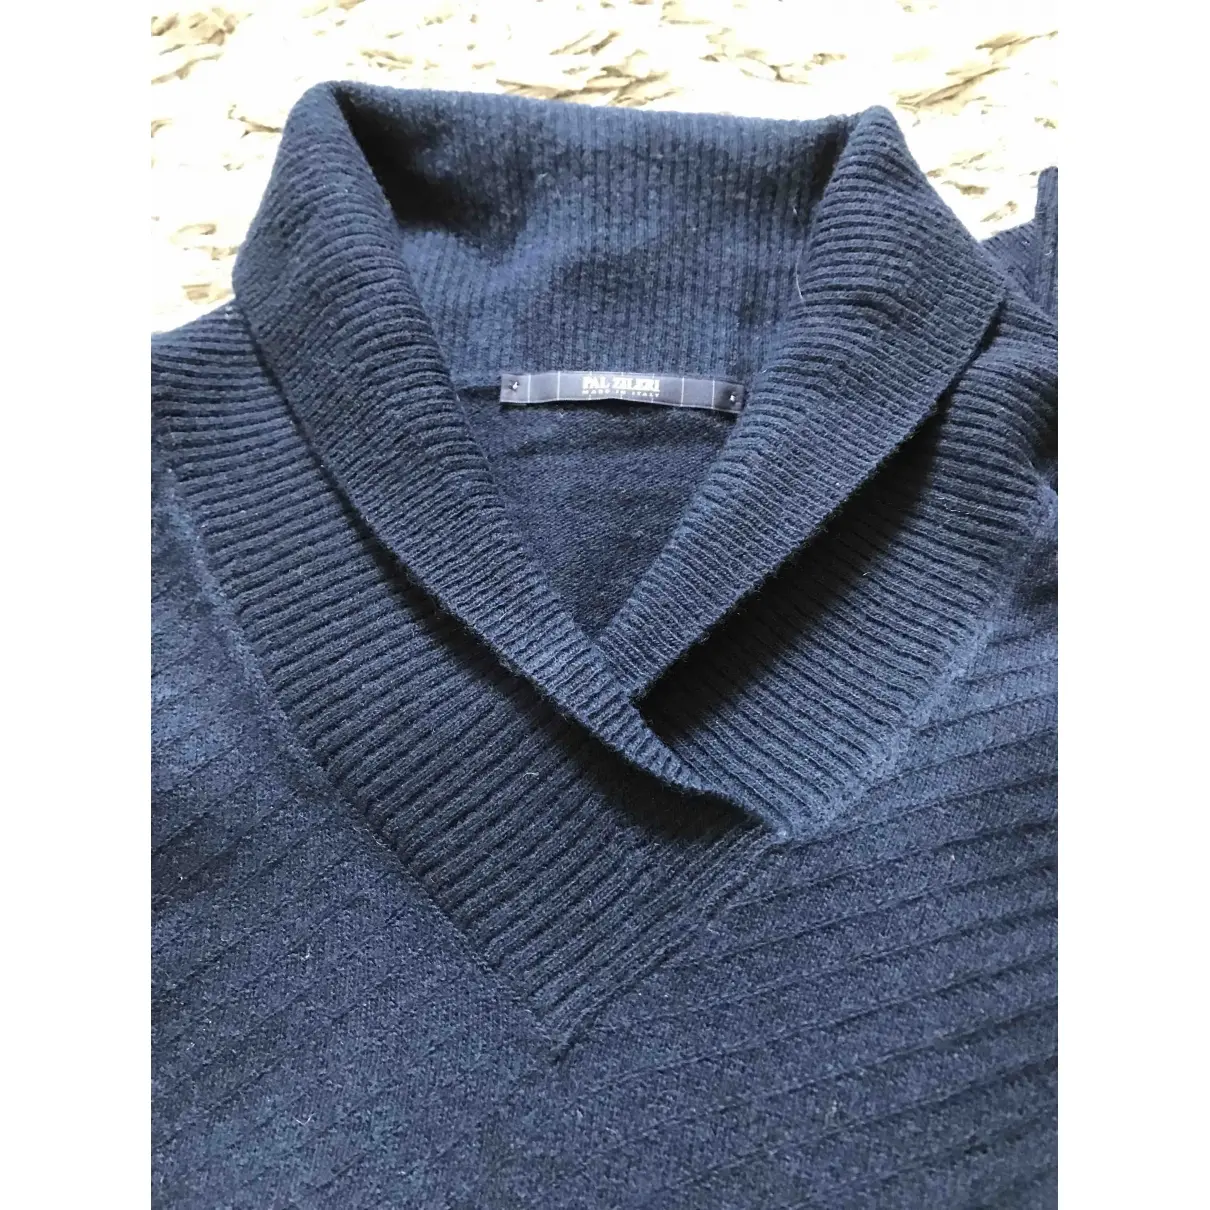 Luxury Pal Zileri Knitwear & Sweatshirts Men